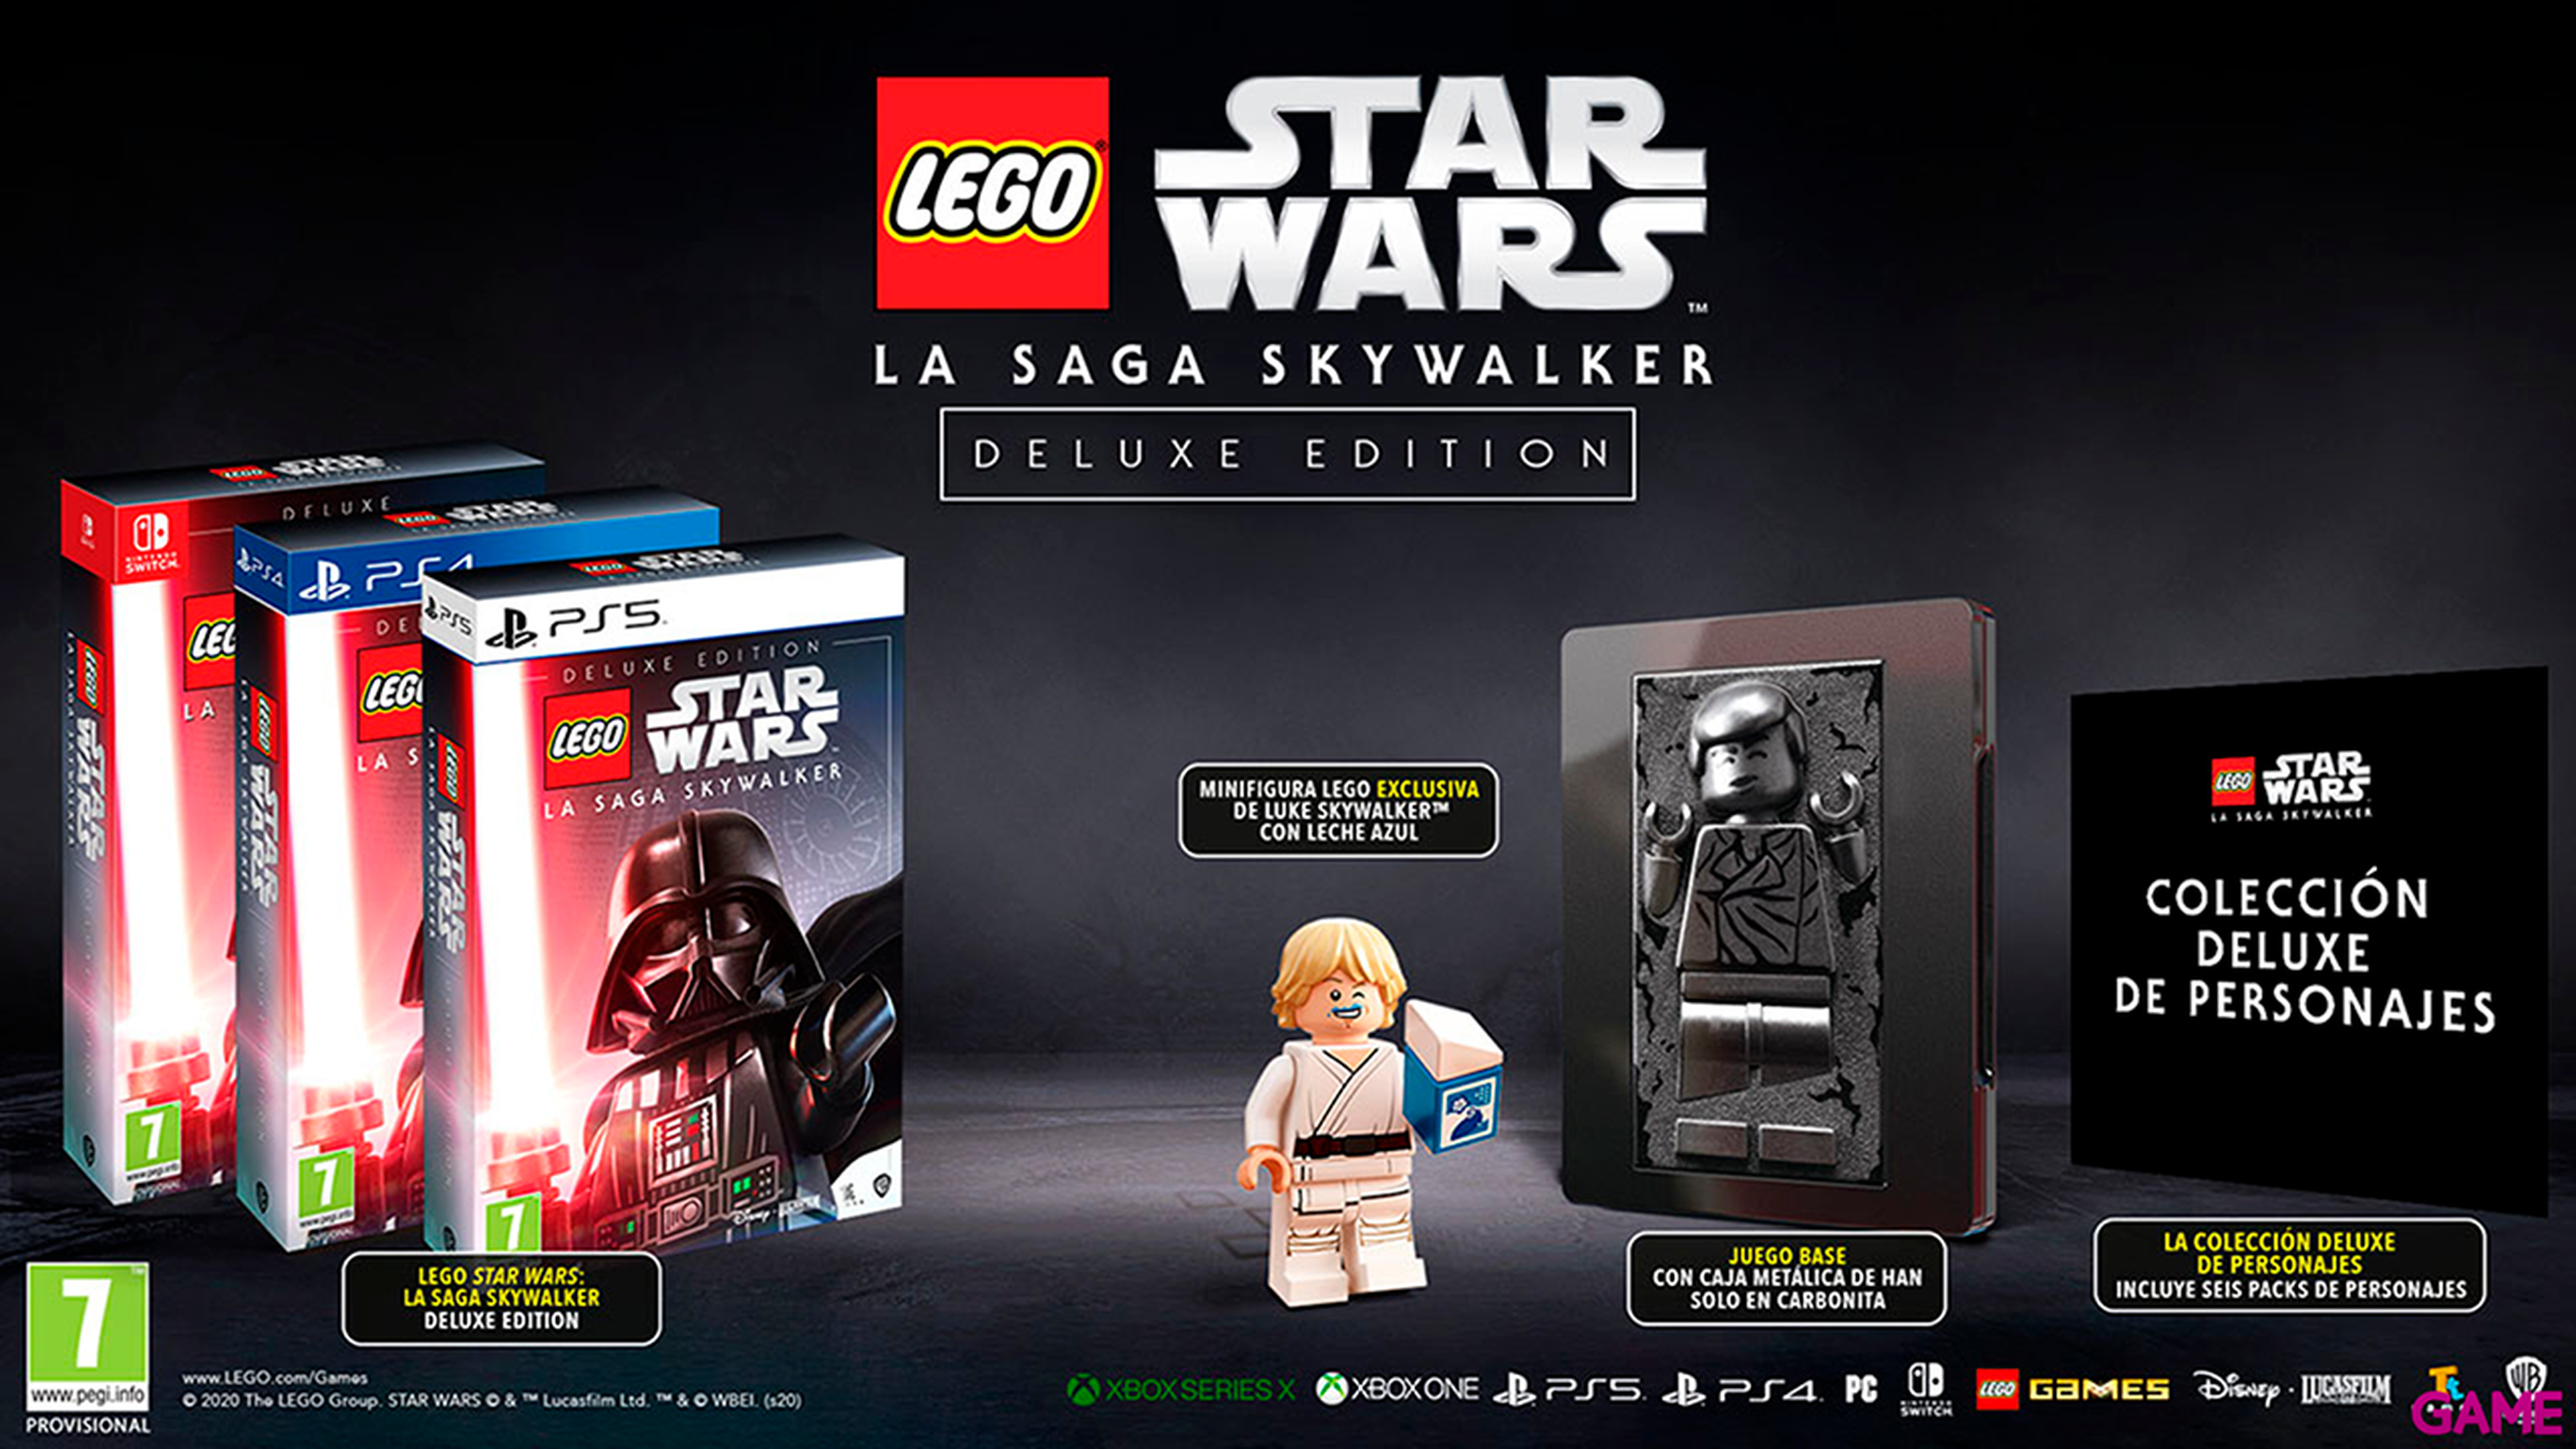 LEGO Star Wars La Saga Skywalker Deluxe Carbonite Edition